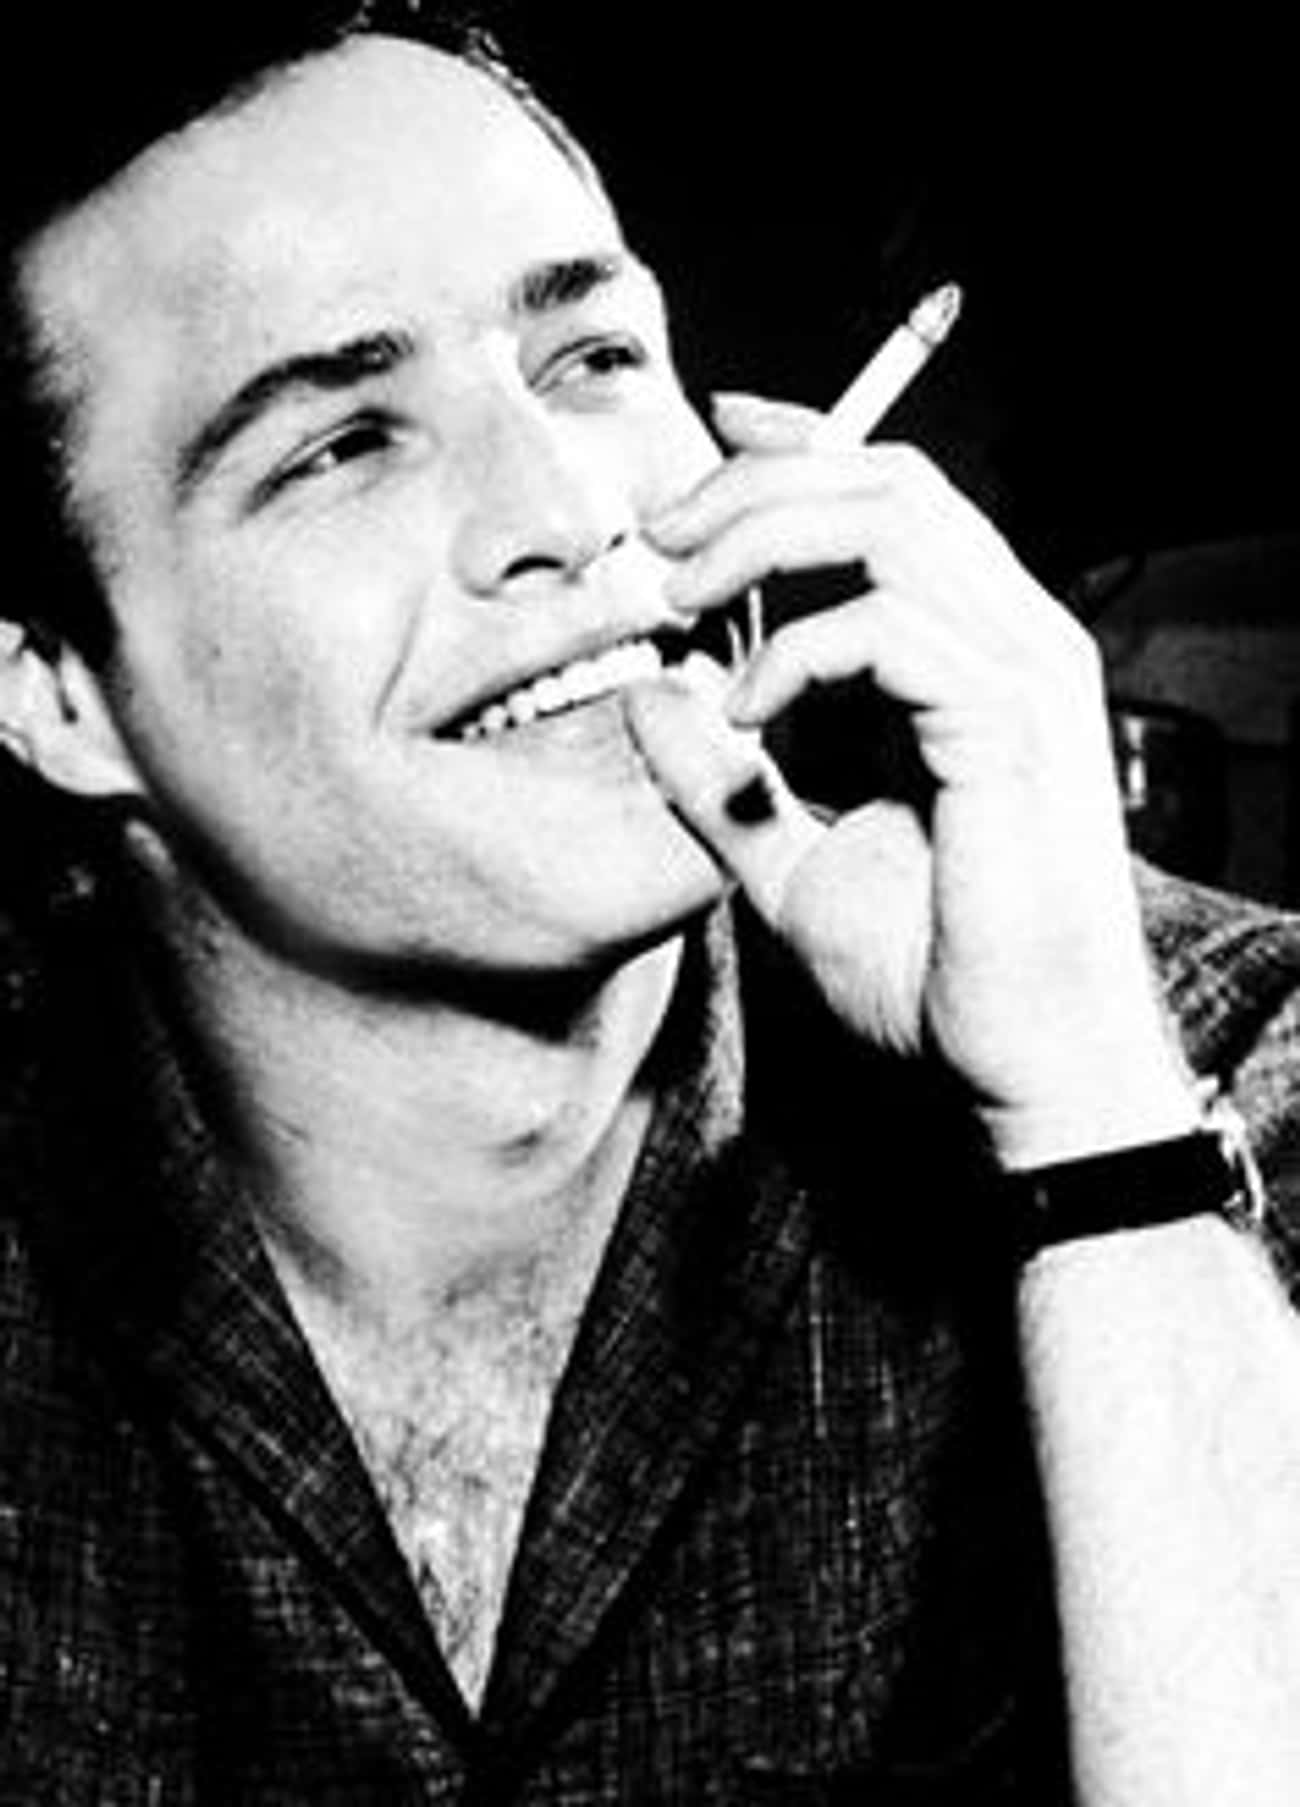 Young Marlon Brando Enjoying A Smoke